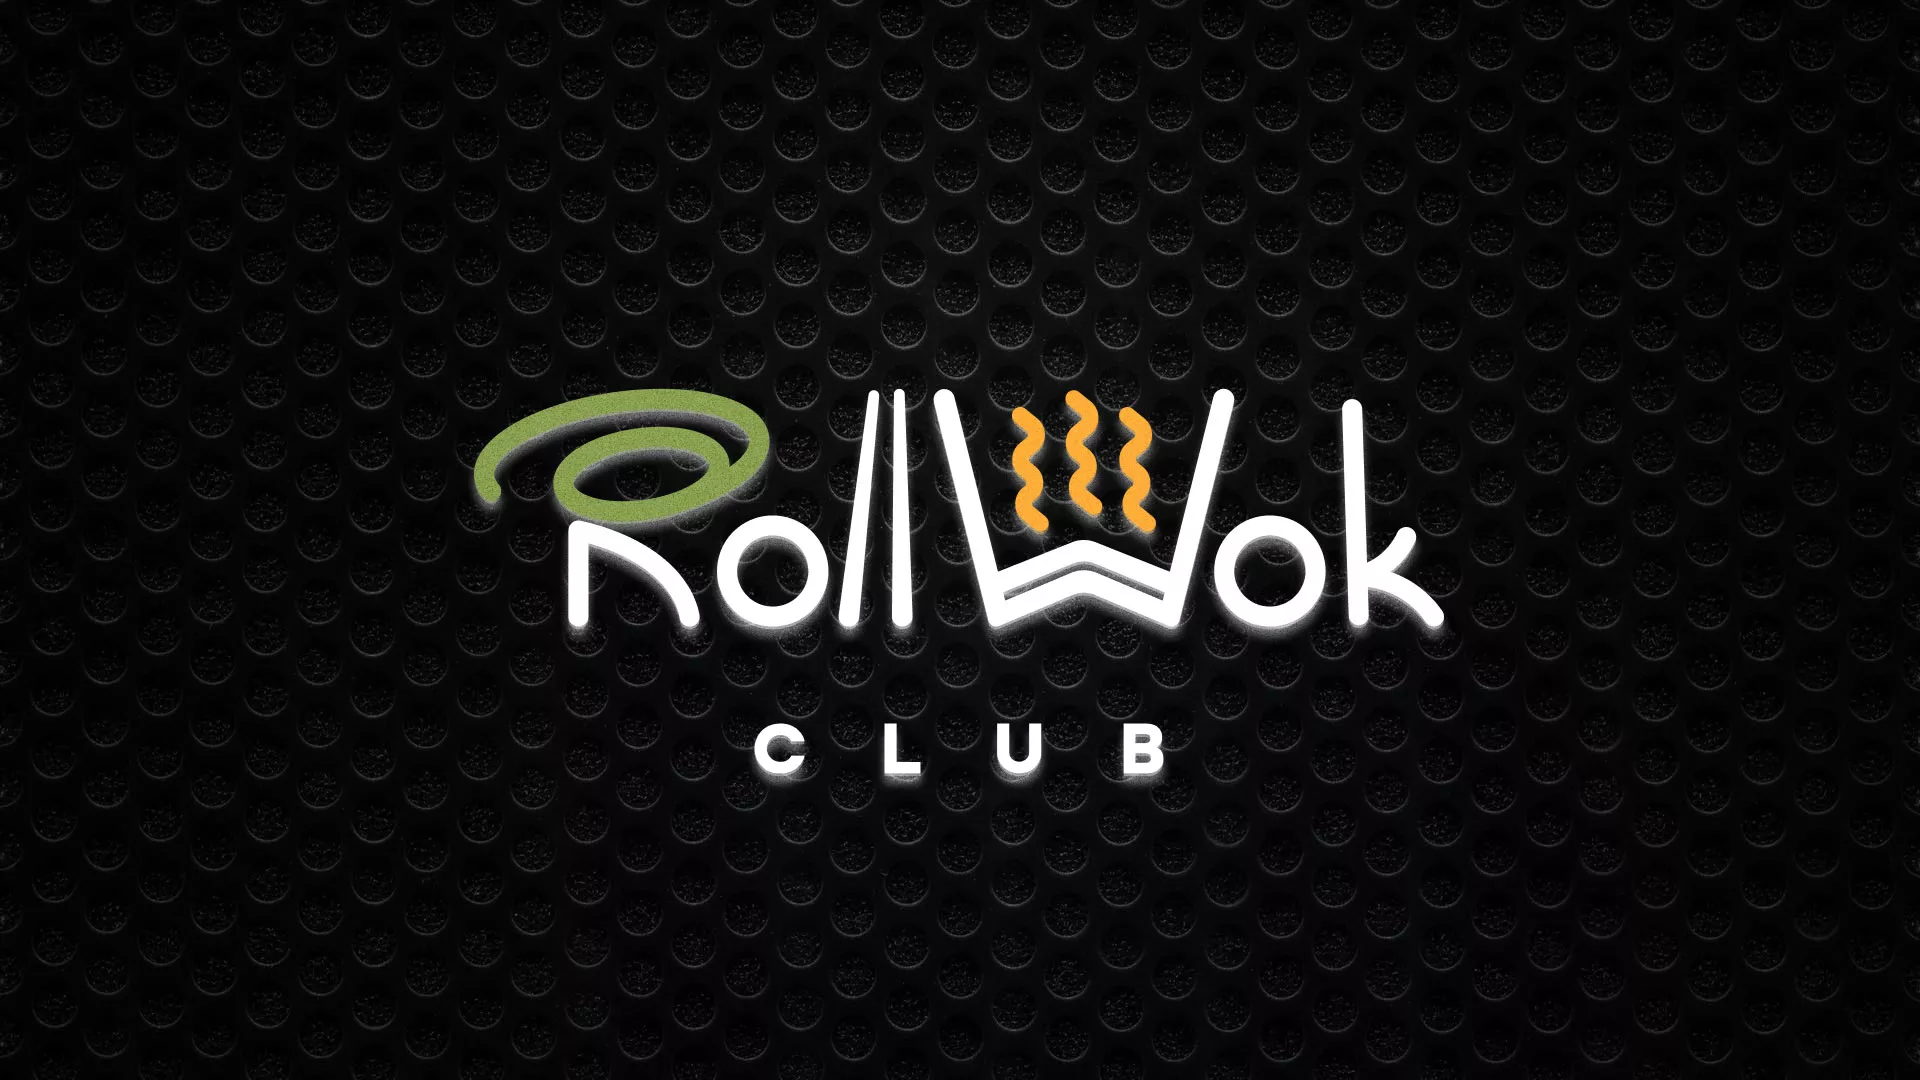 Брендирование торговых точек суши-бара «Roll Wok Club» в Королёве